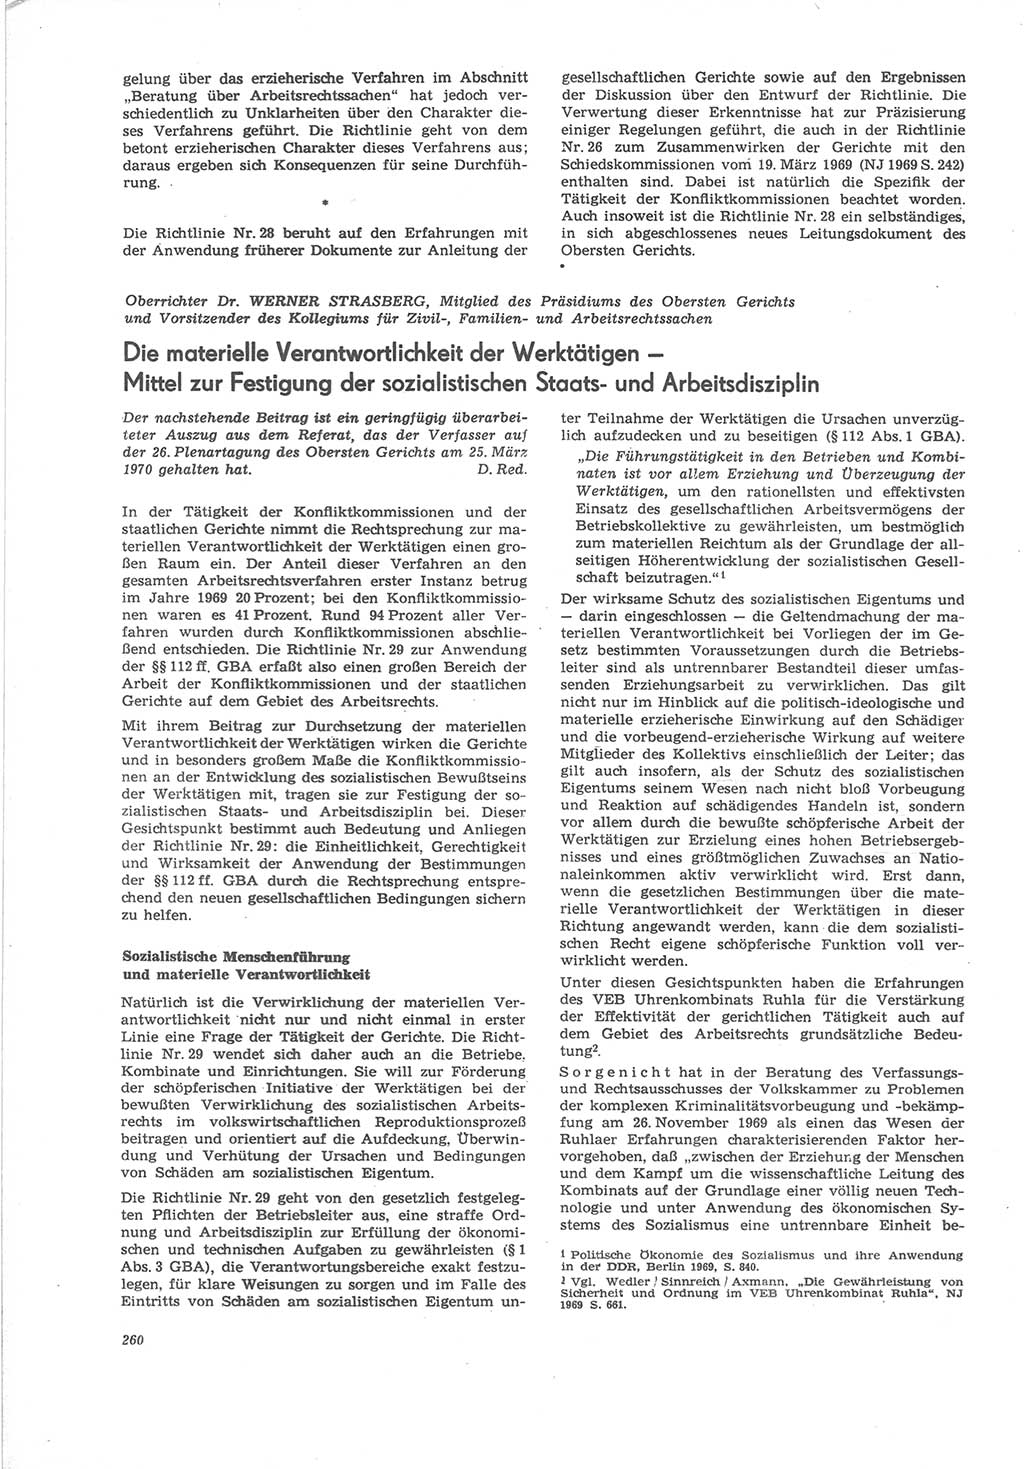 Neue Justiz (NJ), Zeitschrift für Recht und Rechtswissenschaft [Deutsche Demokratische Republik (DDR)], 24. Jahrgang 1970, Seite 260 (NJ DDR 1970, S. 260)